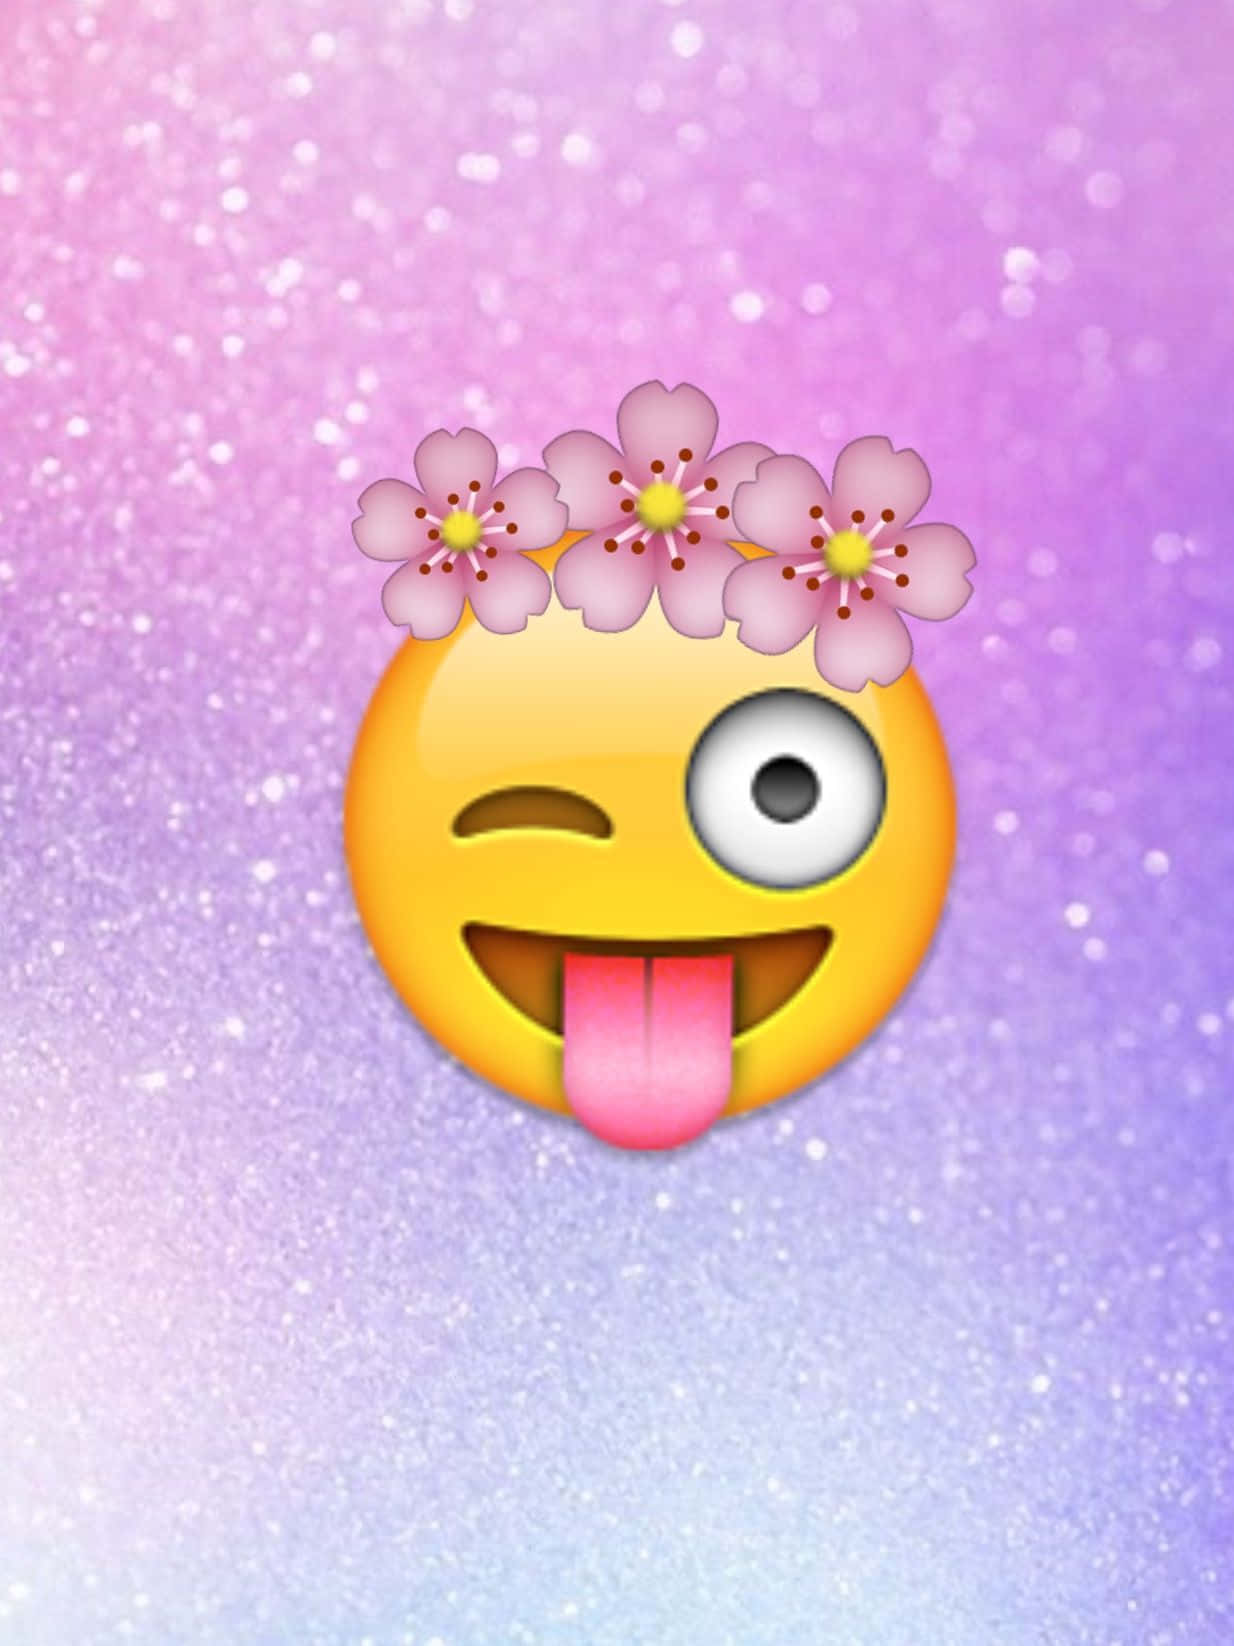 Cute Emoji With Flower Crown Wallpaper